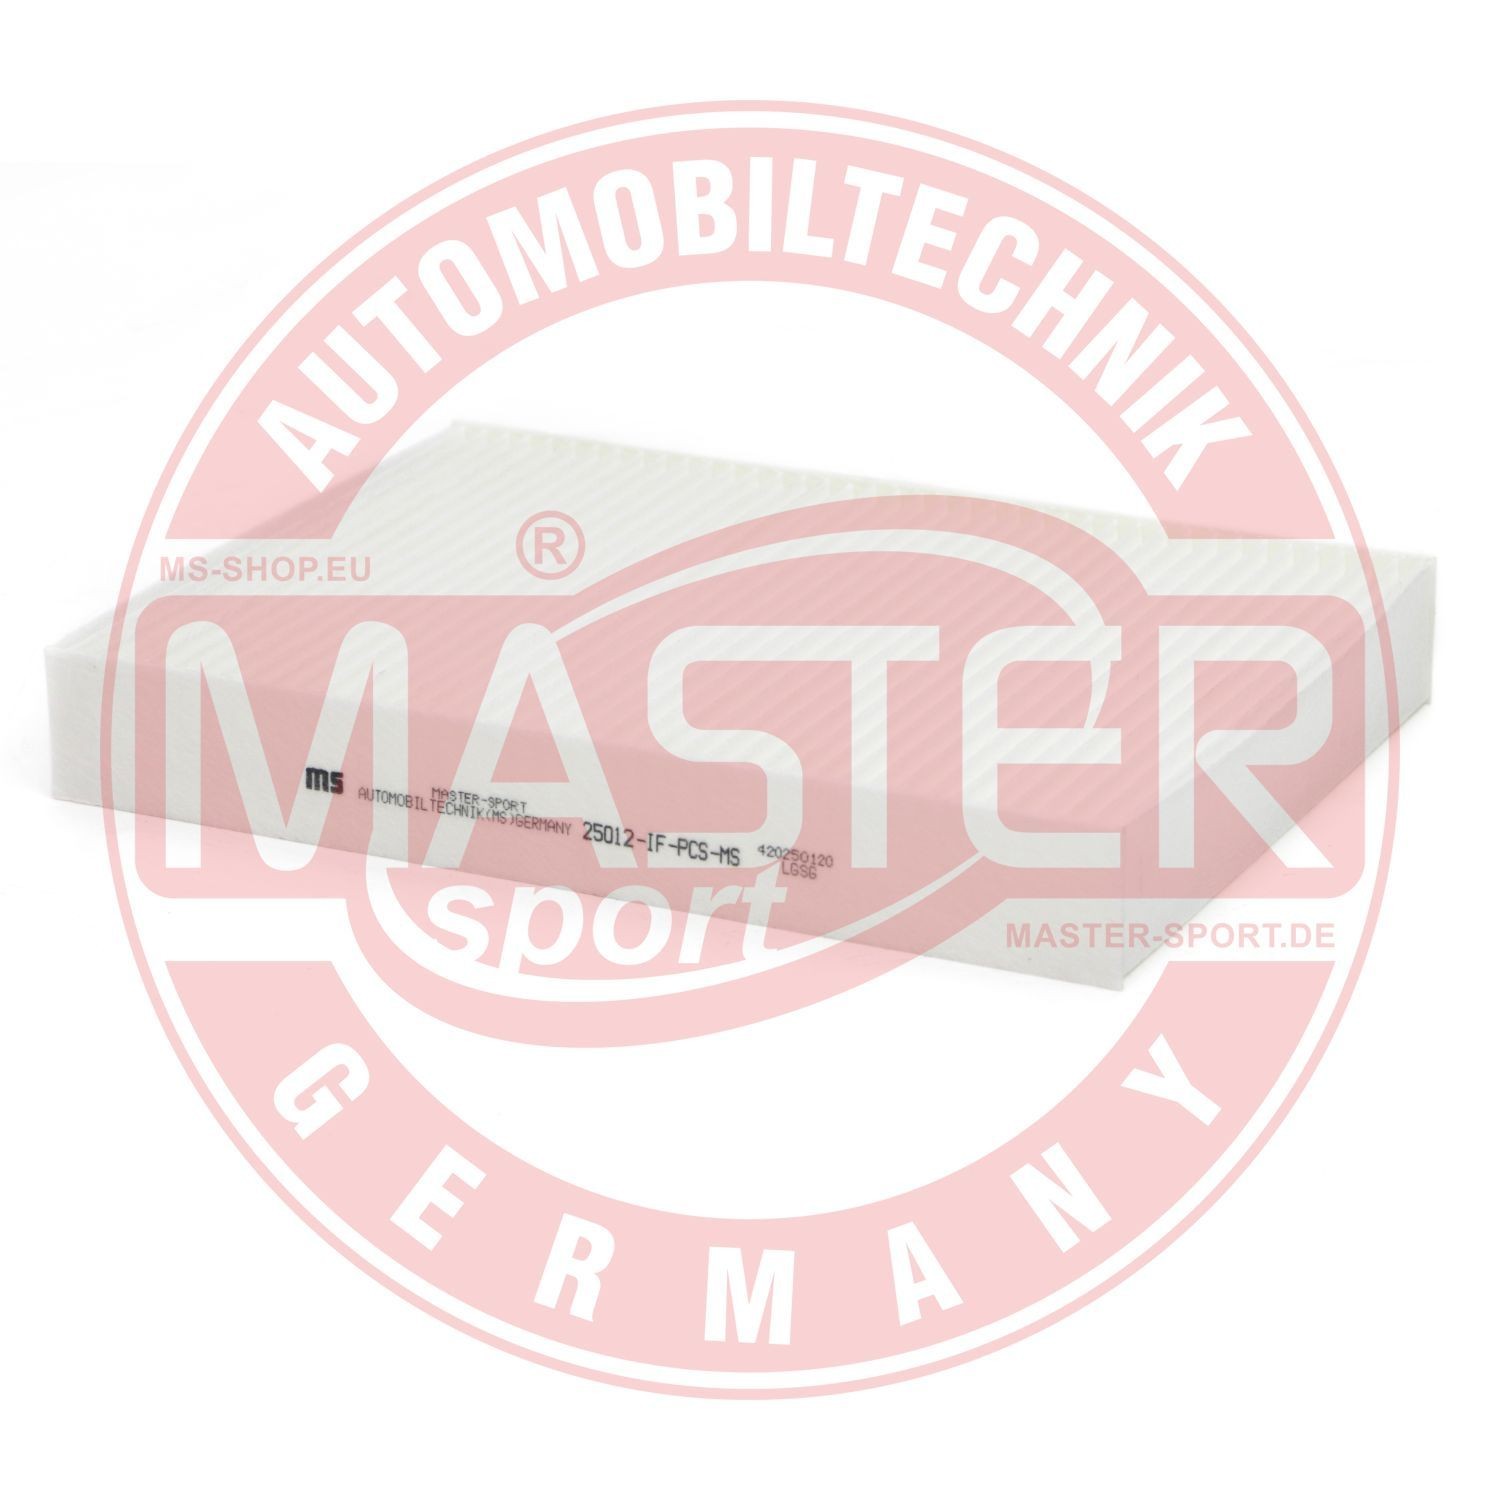 MASTER-SPORT Filtr przeciwpyłkowy Renault 25012-IF-PCS-MS w oryginalnej jakości